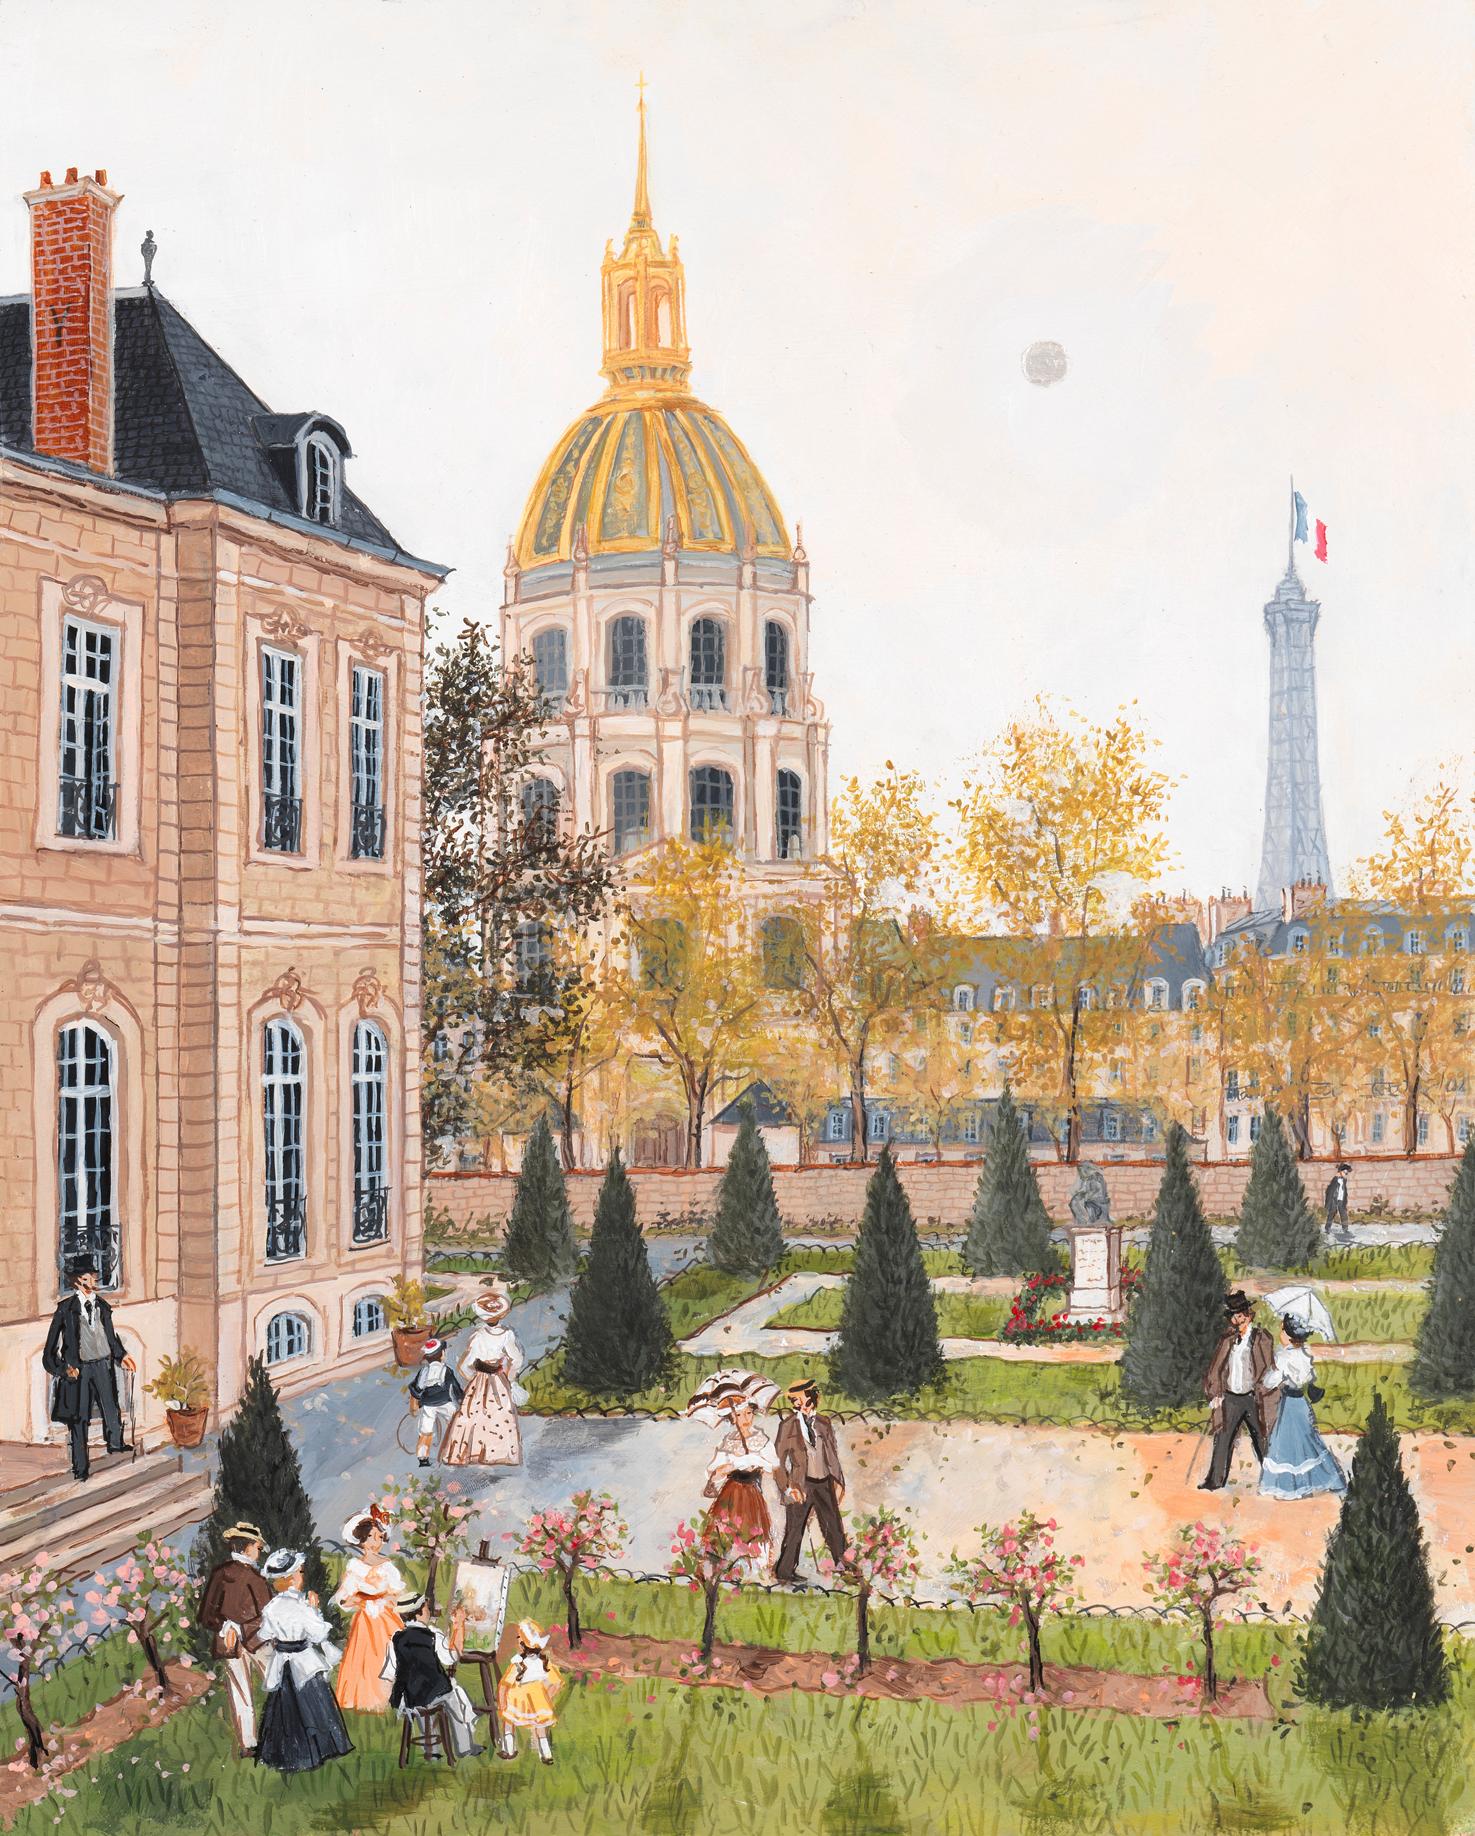 L'hôtel Biron - Painting by Fabienne Delacroix